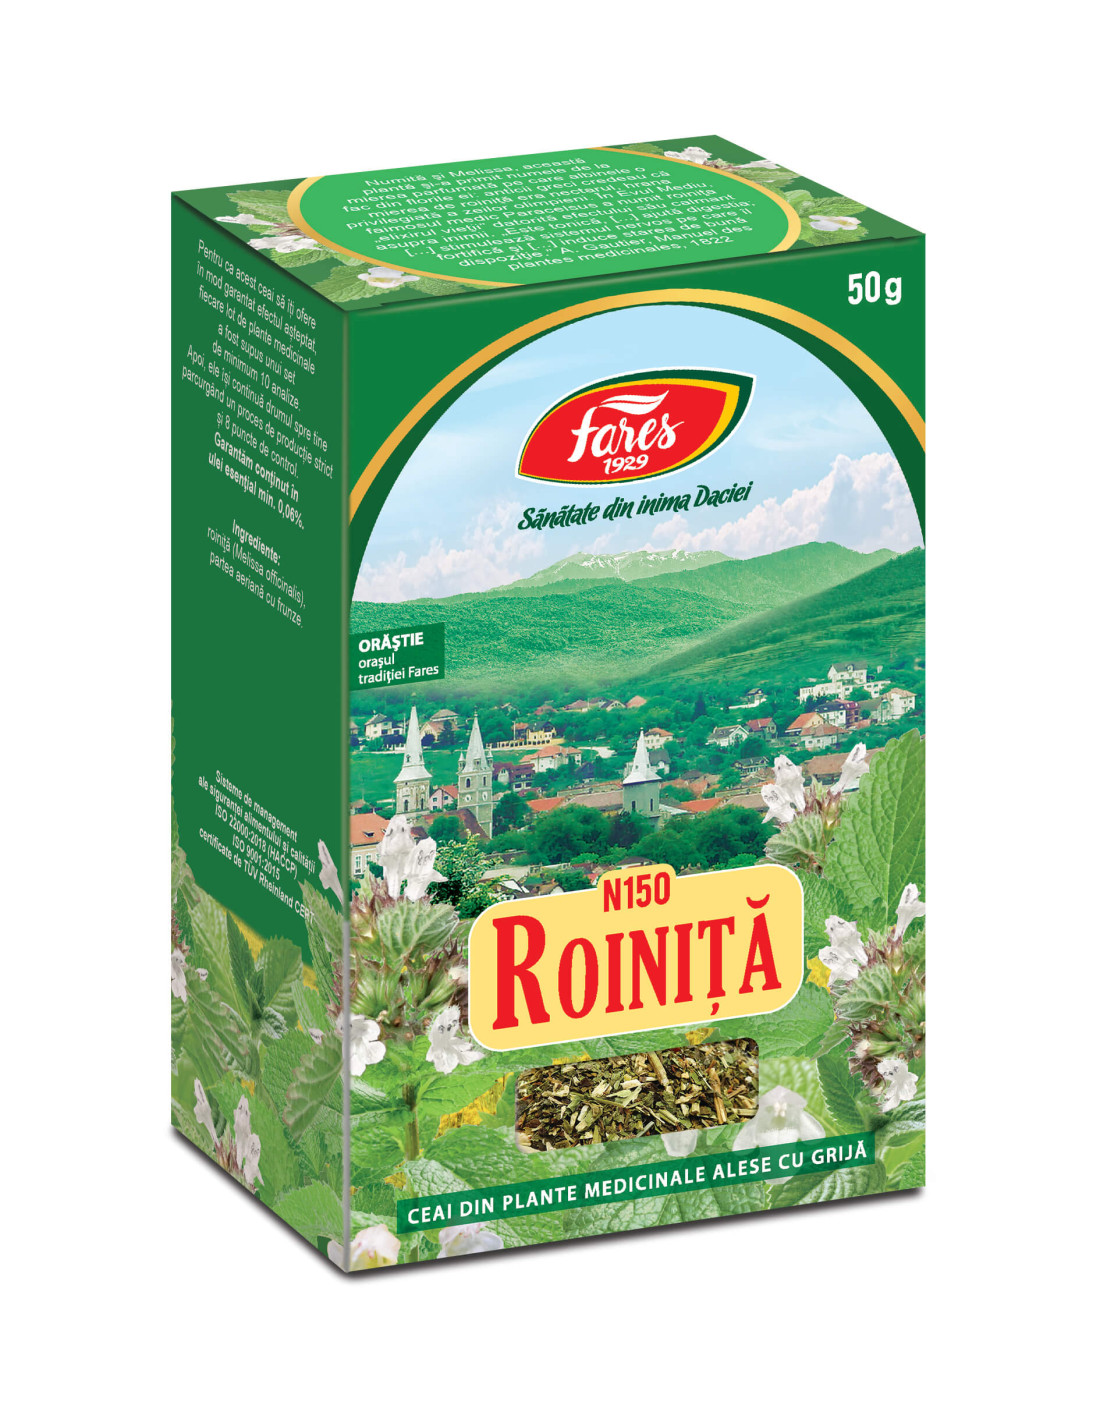 Ceaiuri - Ceai Roinita, 50 g vrac, Fares, farmacieieftina.ro